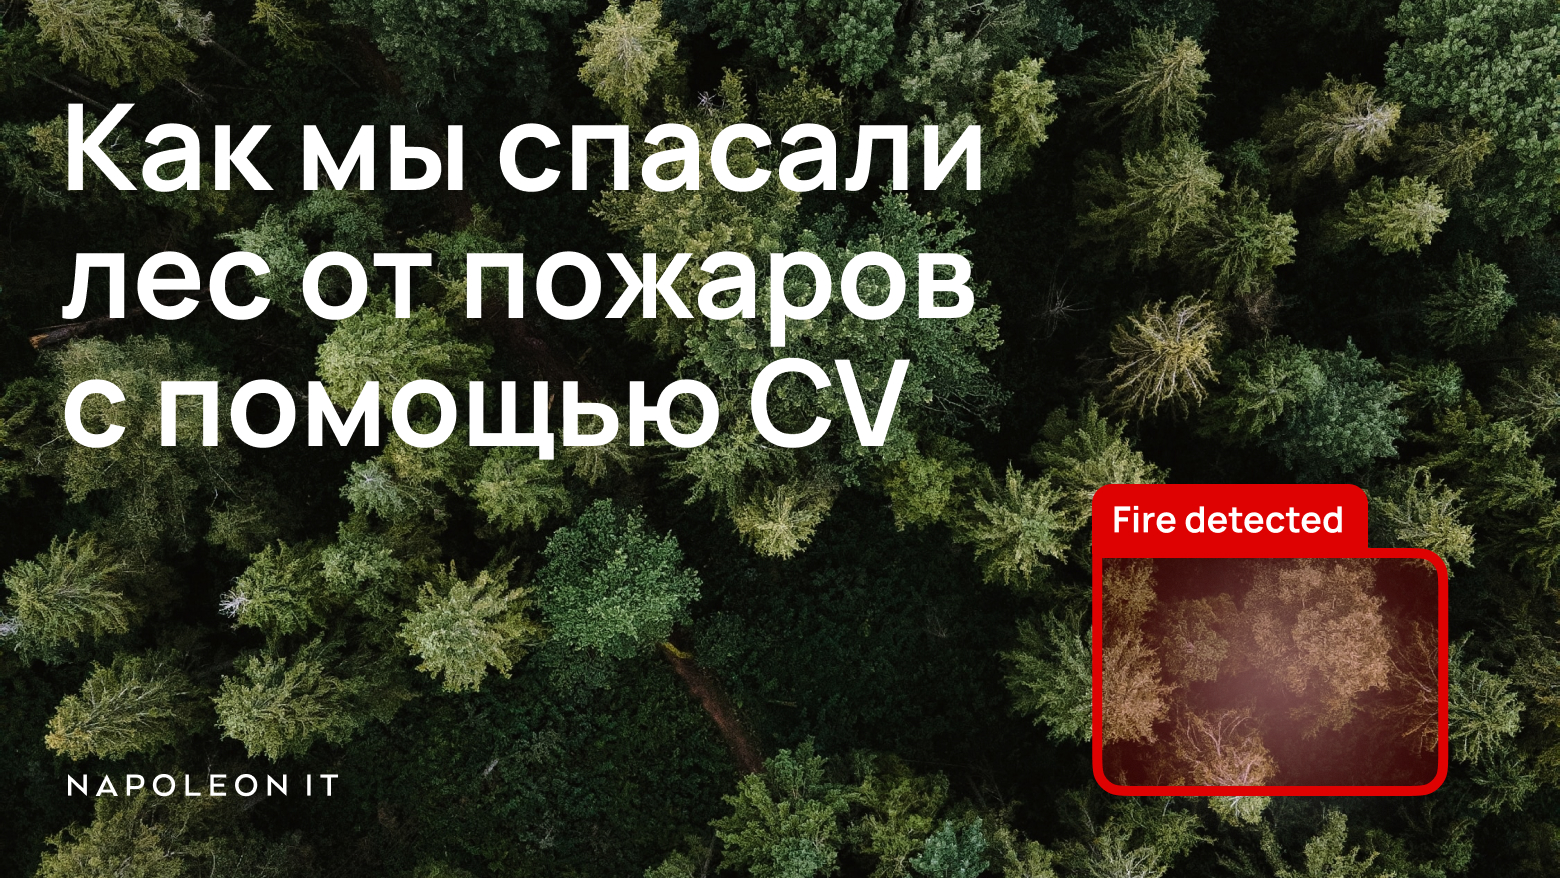 Спасение леса от пожара с помощью CV